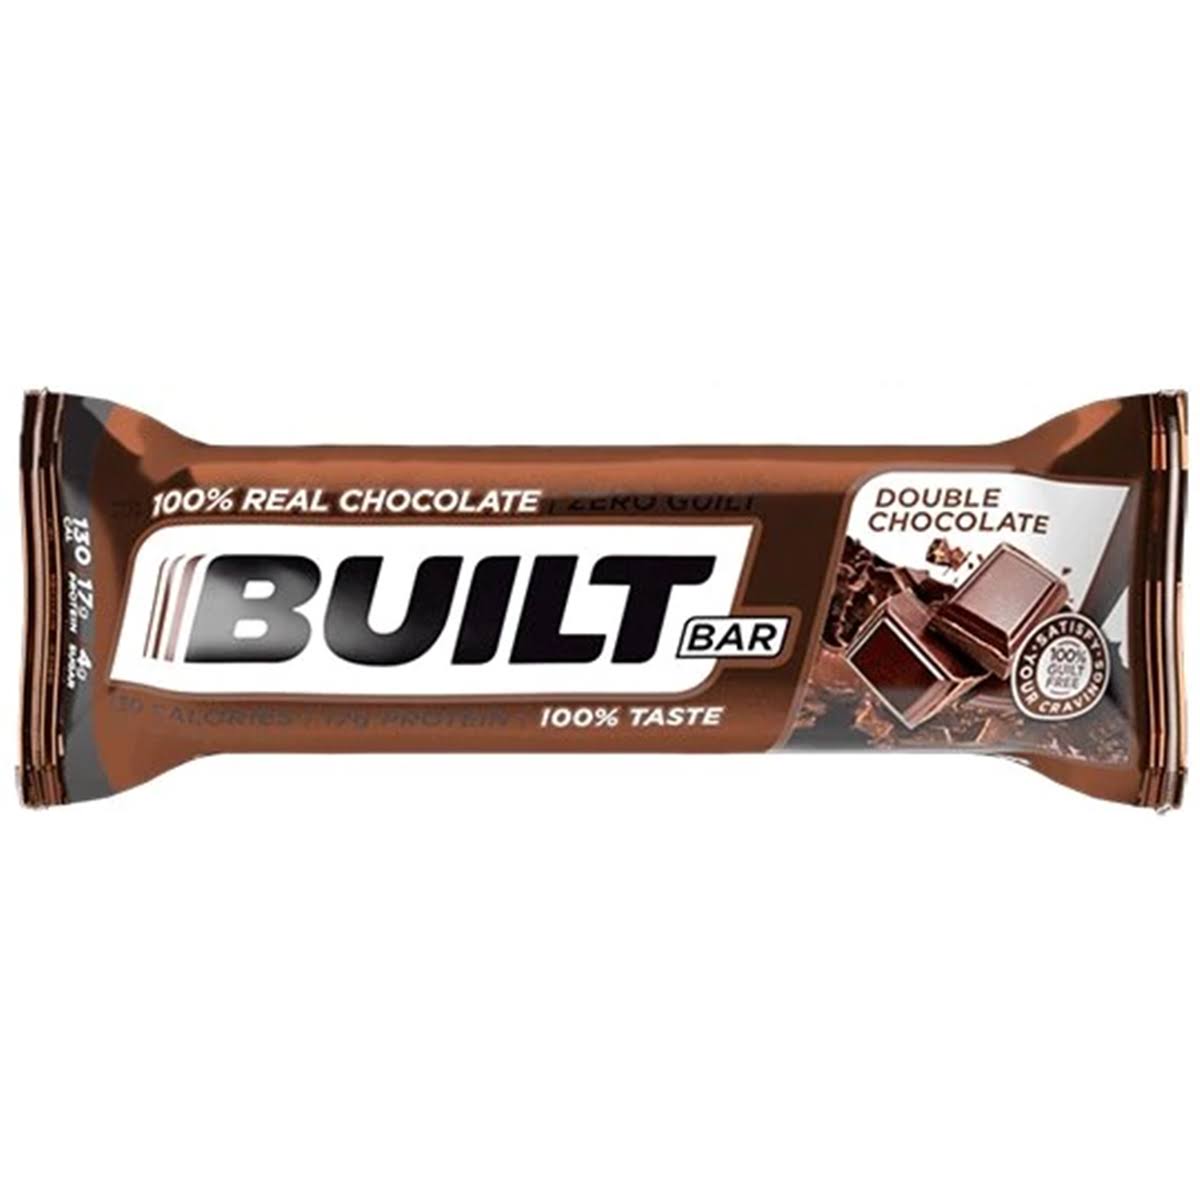 Built Bar, Double Chocolate - 49 g